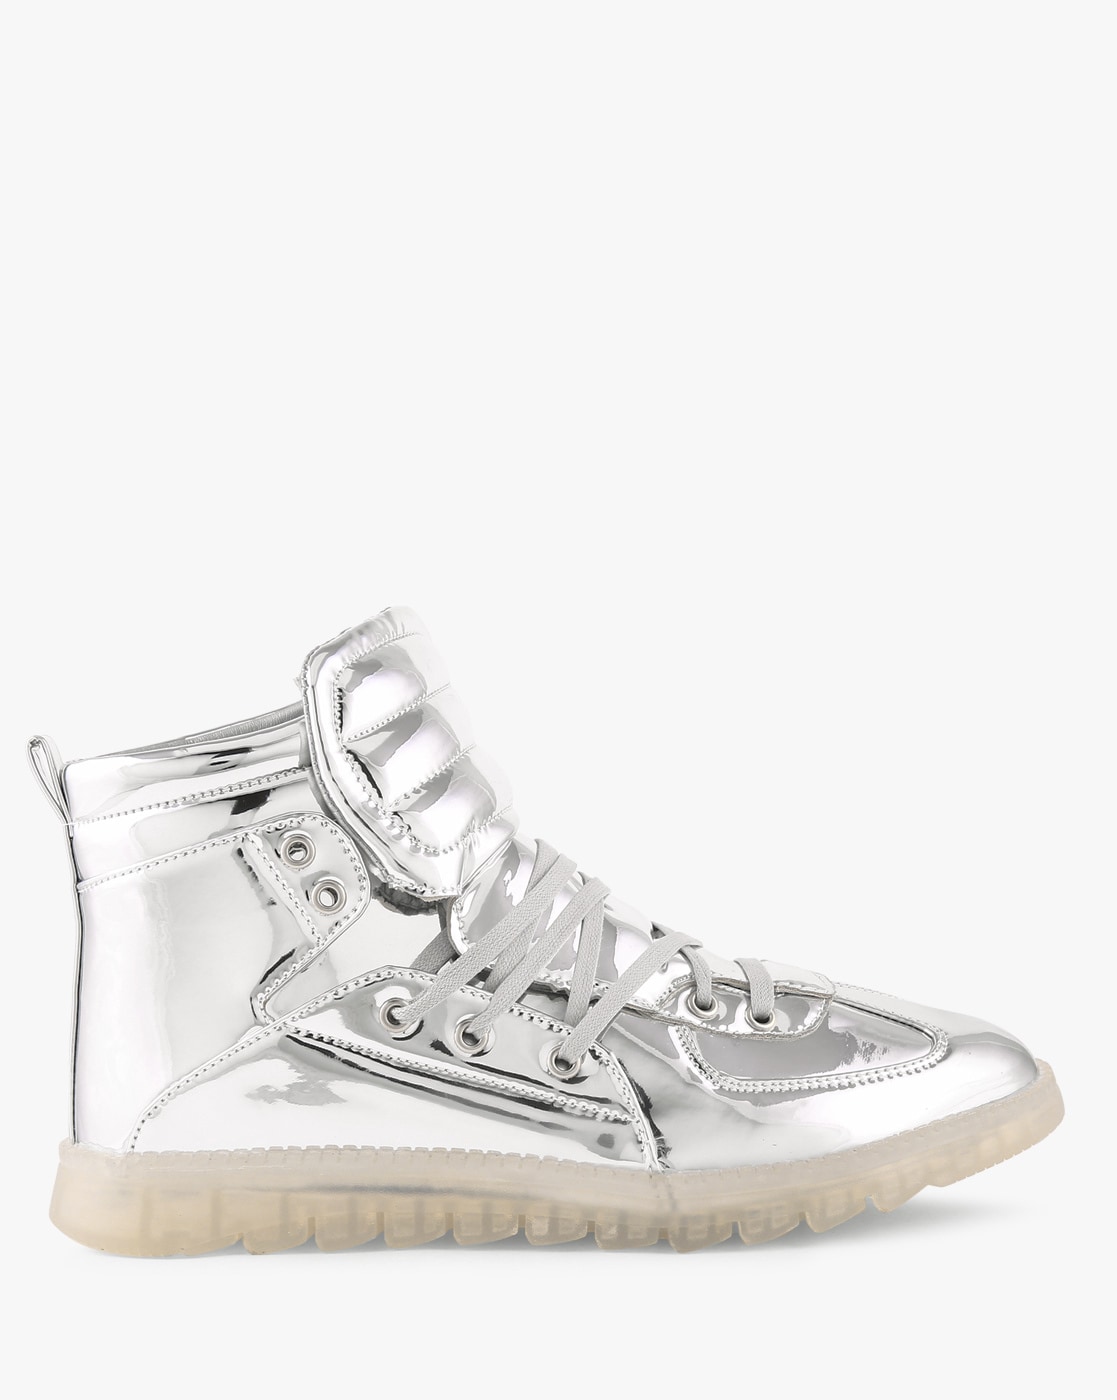 PUMA Teveris Nitro metallic sneakers in white with silver detail | ASOS